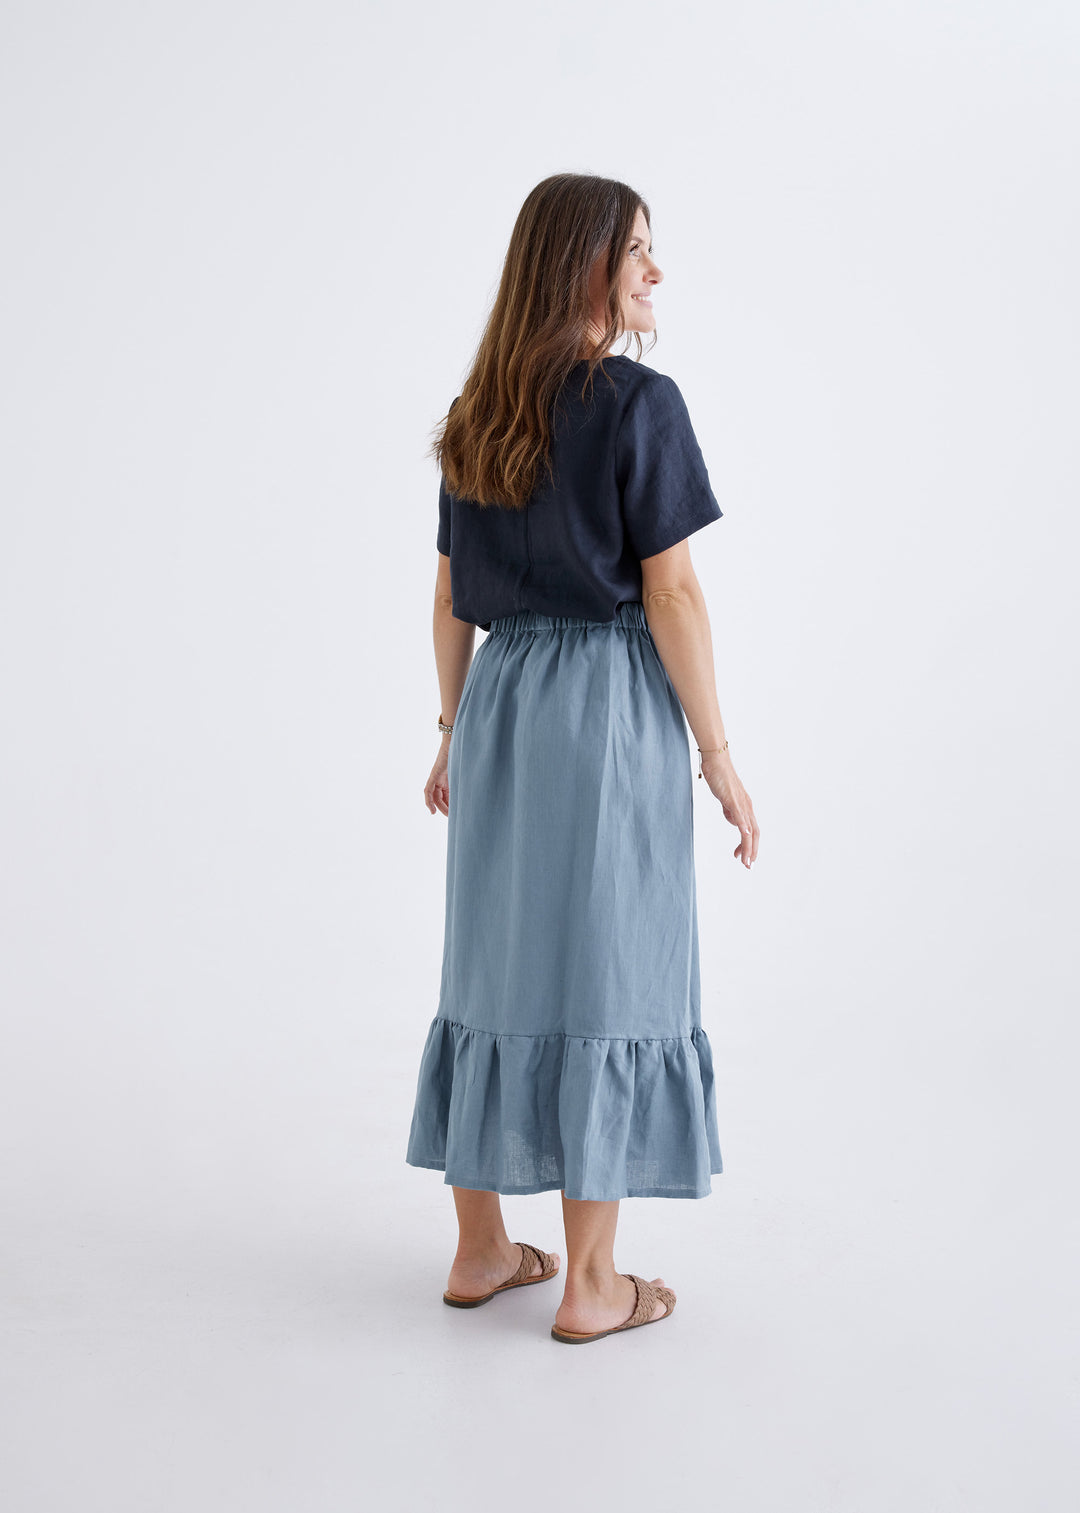 Luna Linen Skirt in Liberty Blue